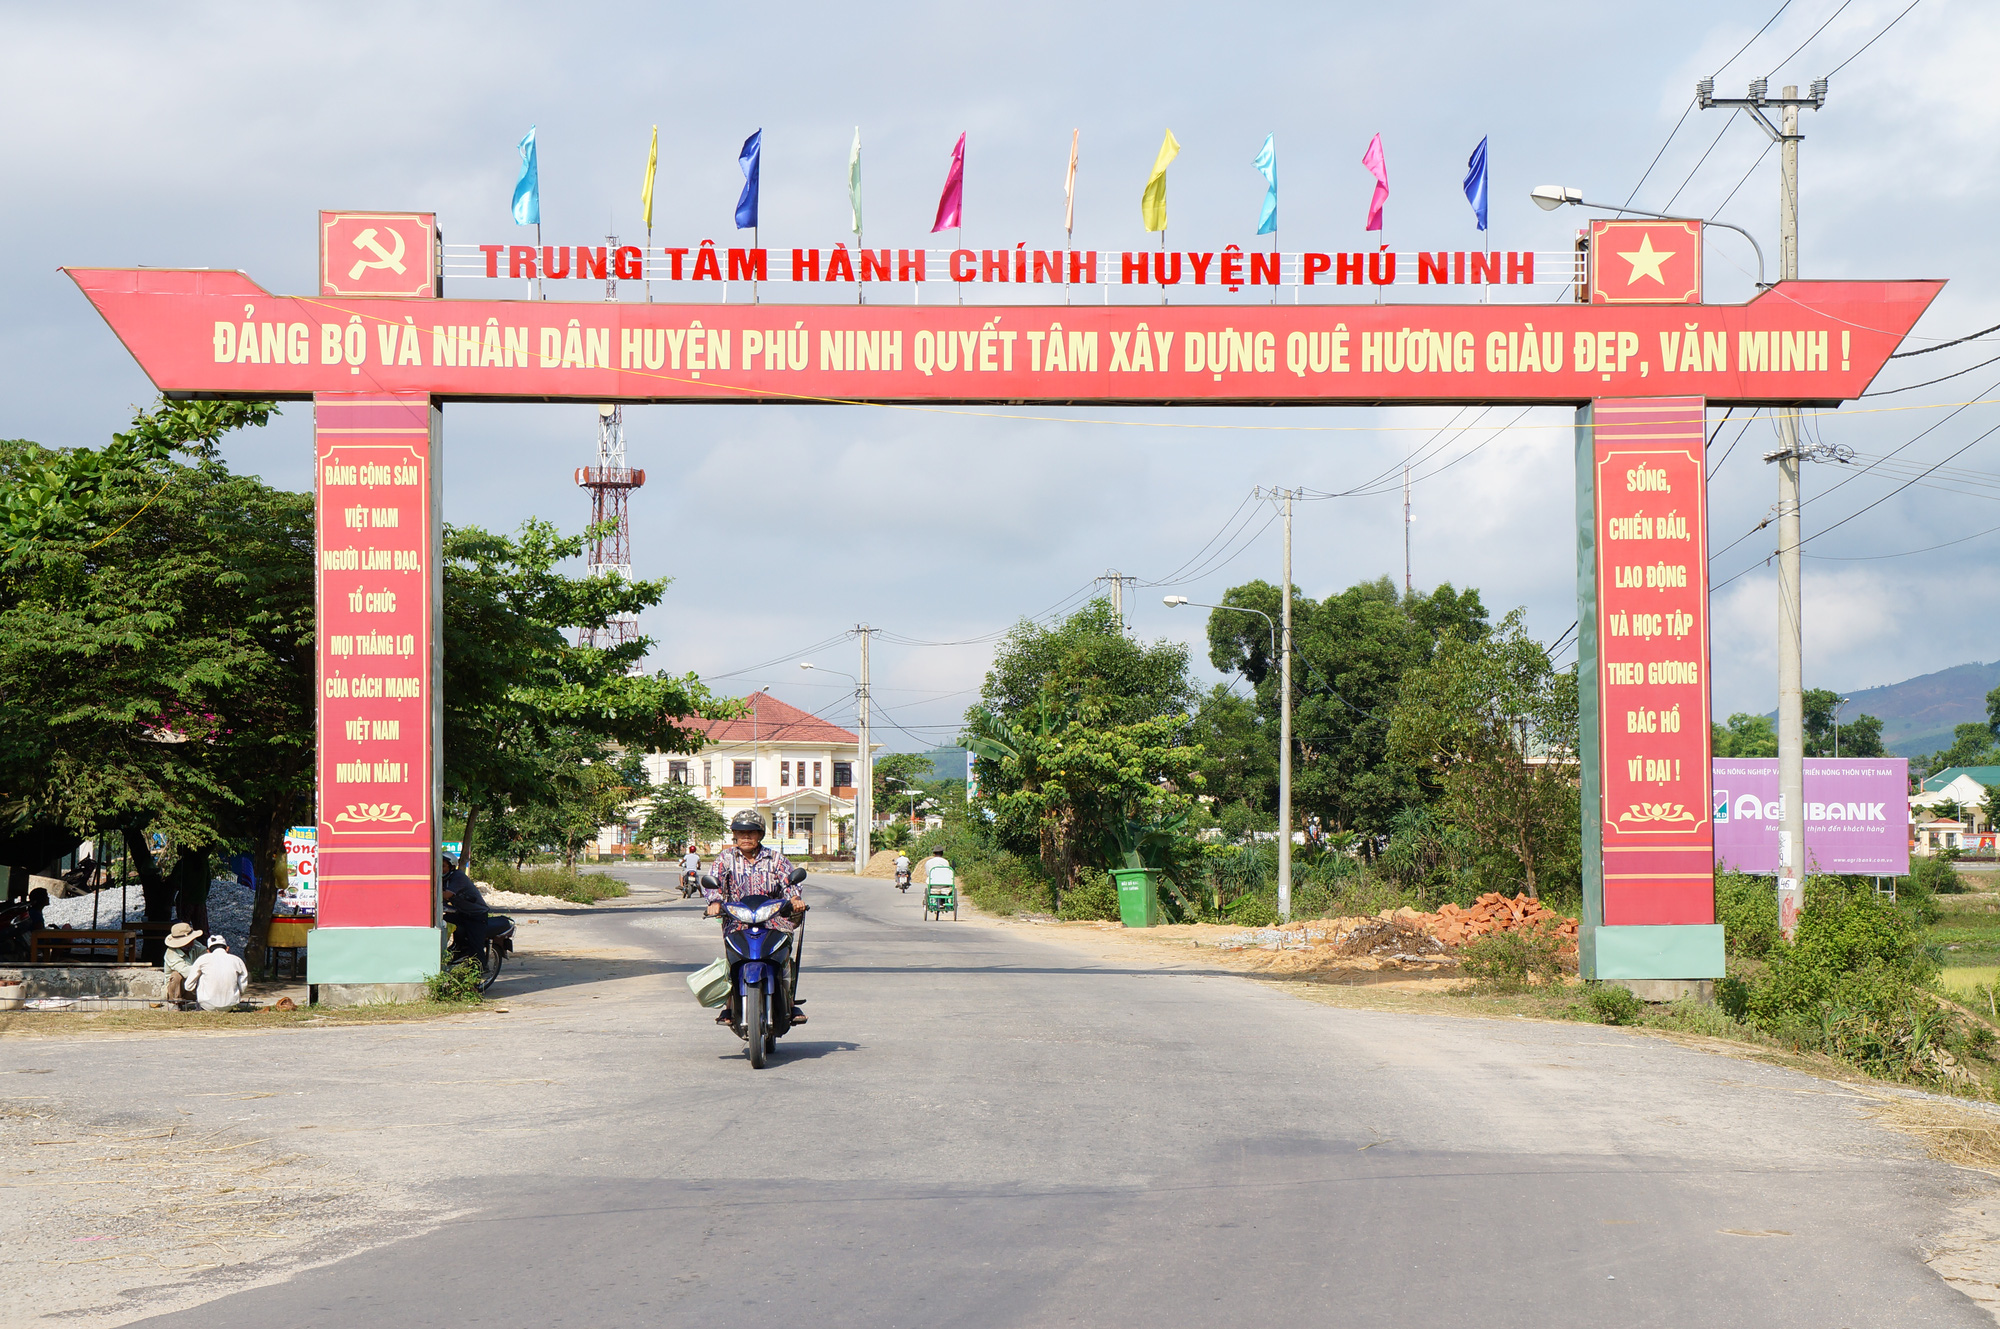 10 năm xây dựng NTM, Quảng Nam có 116 xã đạt chuẩn - Ảnh 3.